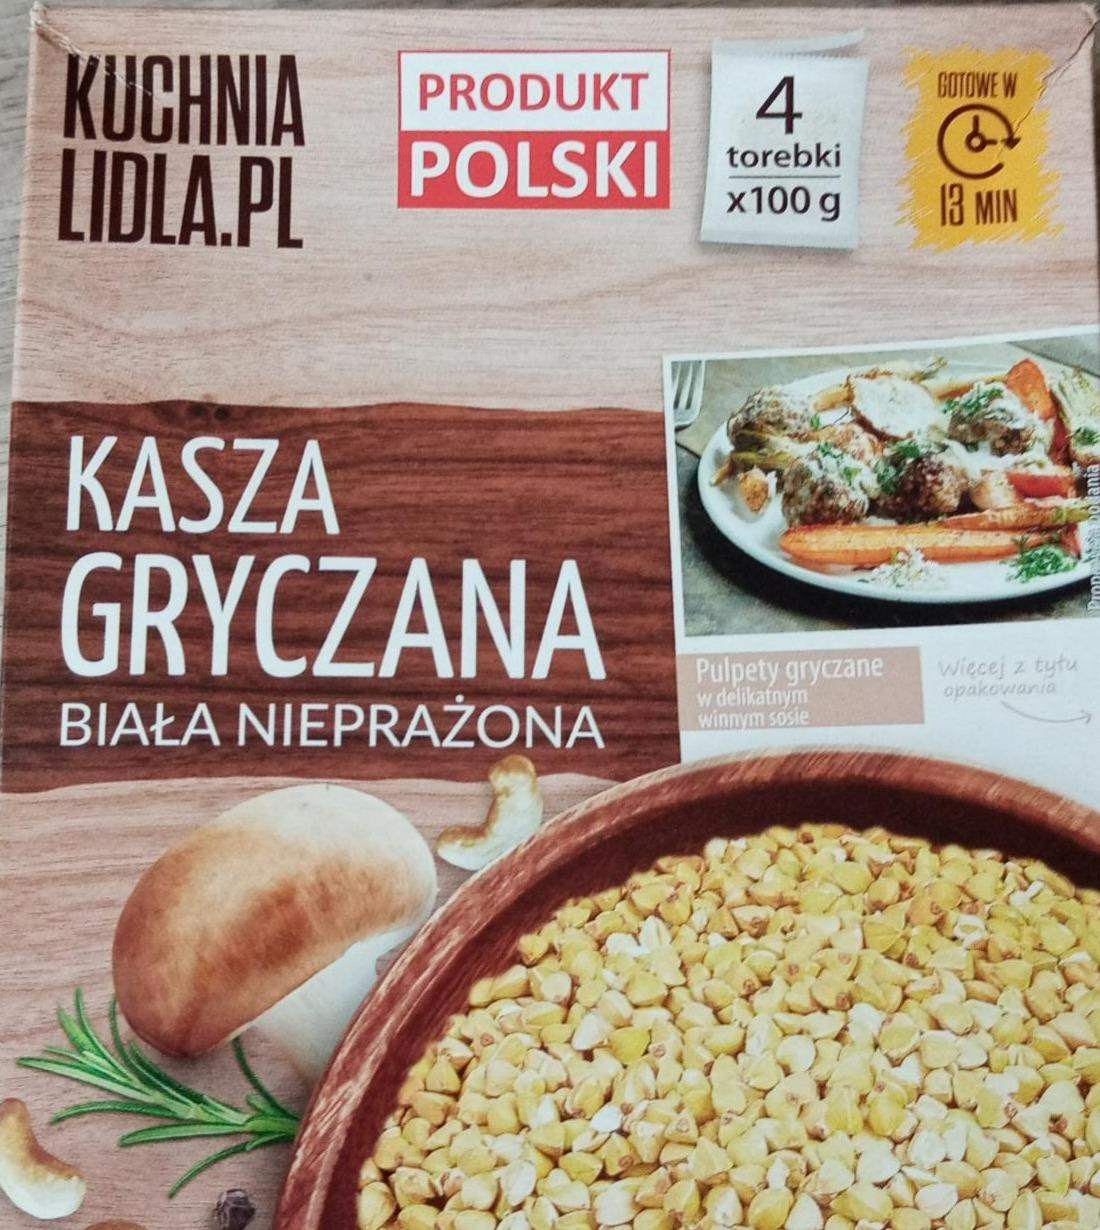 Fotografie - Kasza Gryczana Biała Nieprazona Kuchnia Lidla.Pl